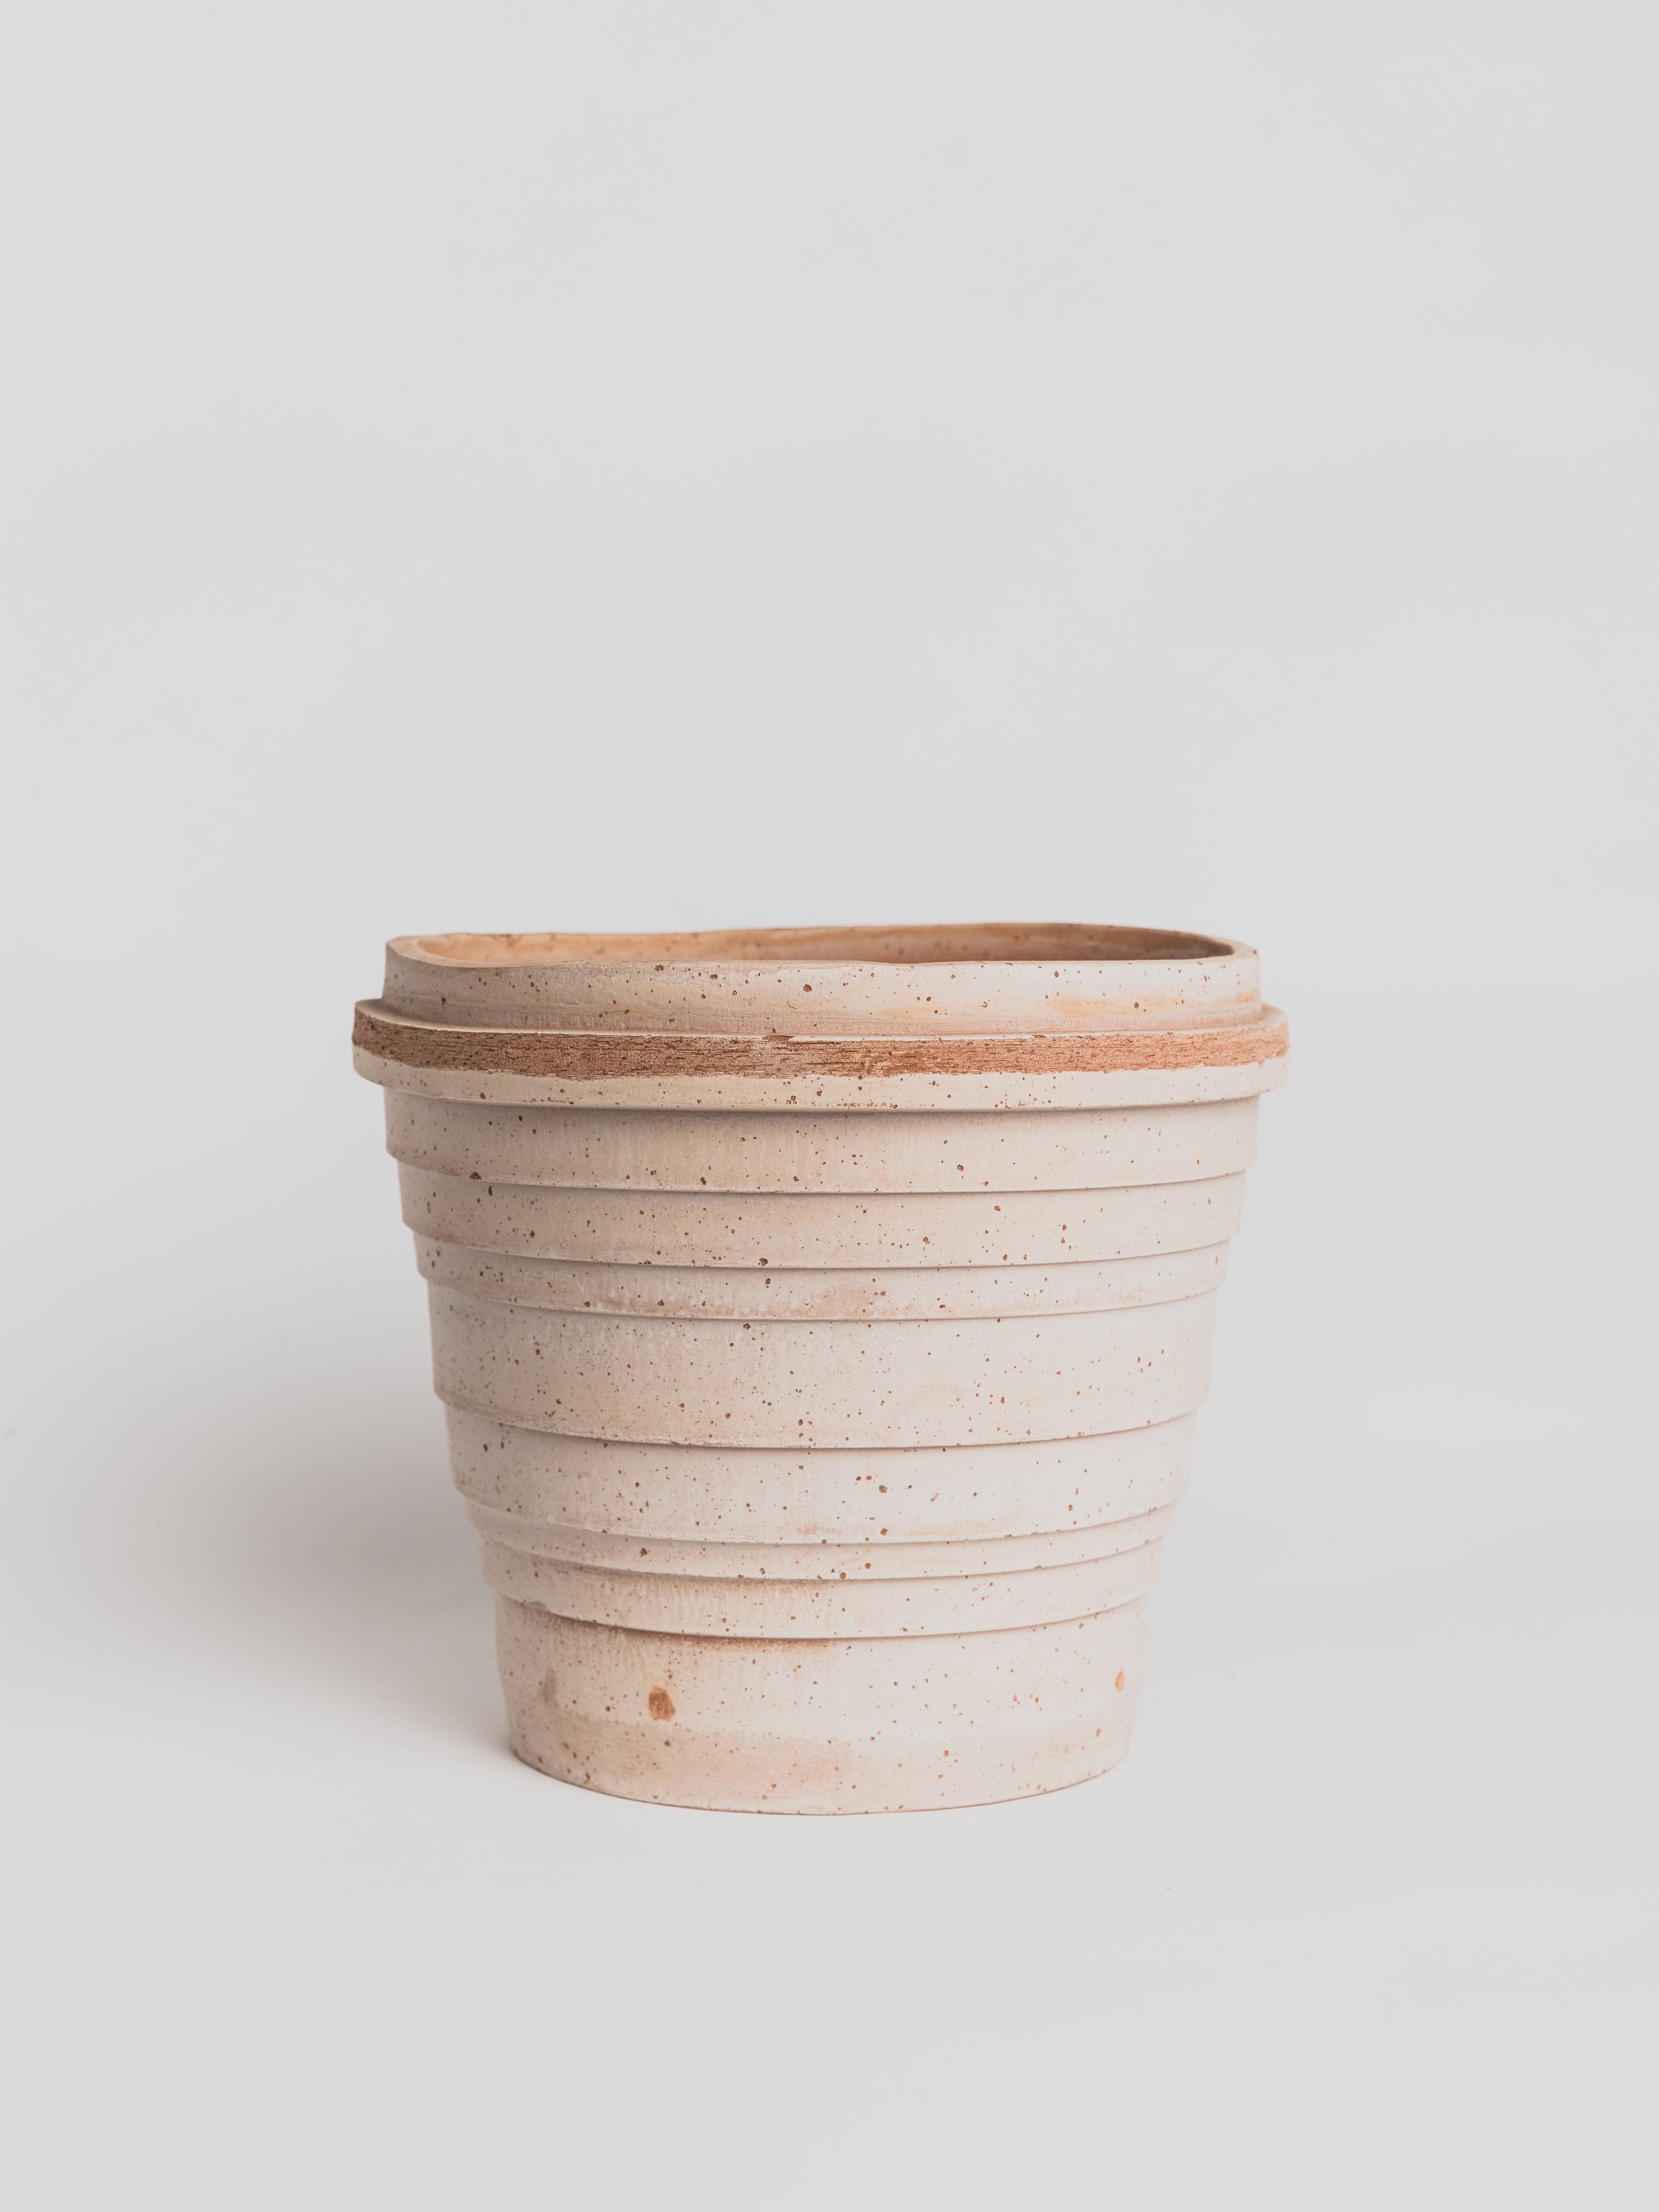 Jupiter - Terracotta Pottery Bergs Potter 